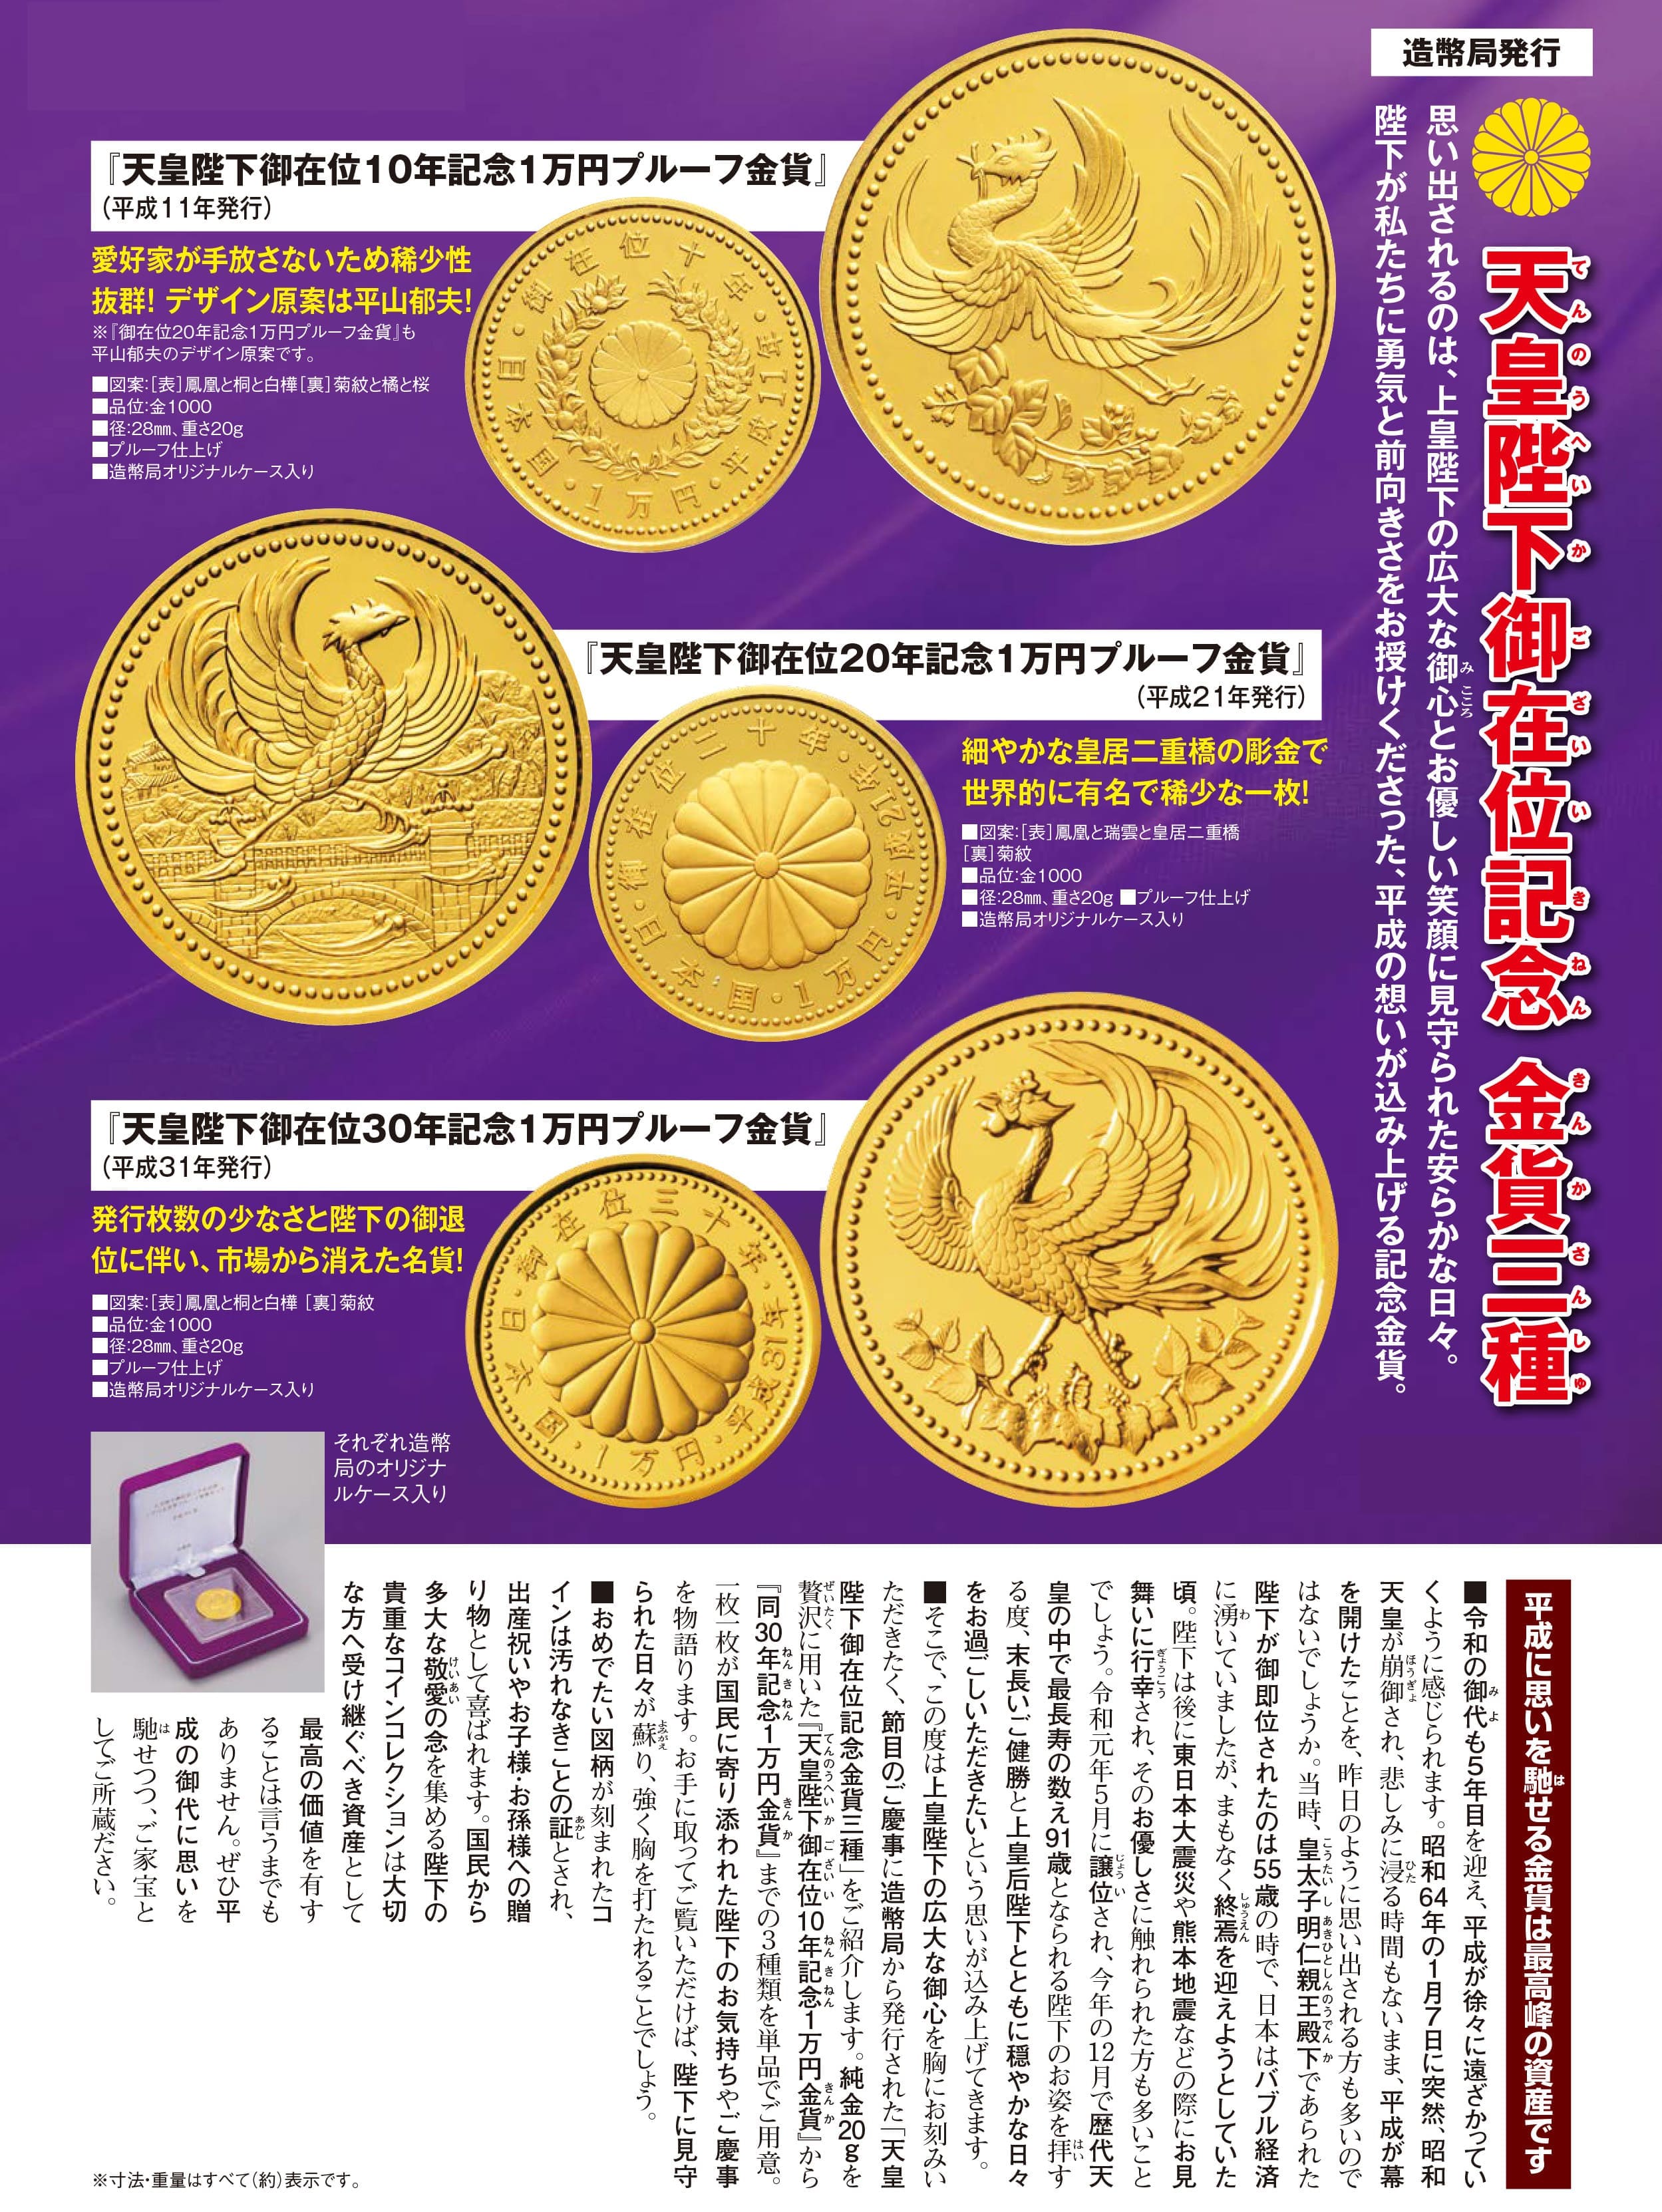 天皇陛下御在位30年記念1万円プルーフ金貨』 | 東京書芸館公式通販 